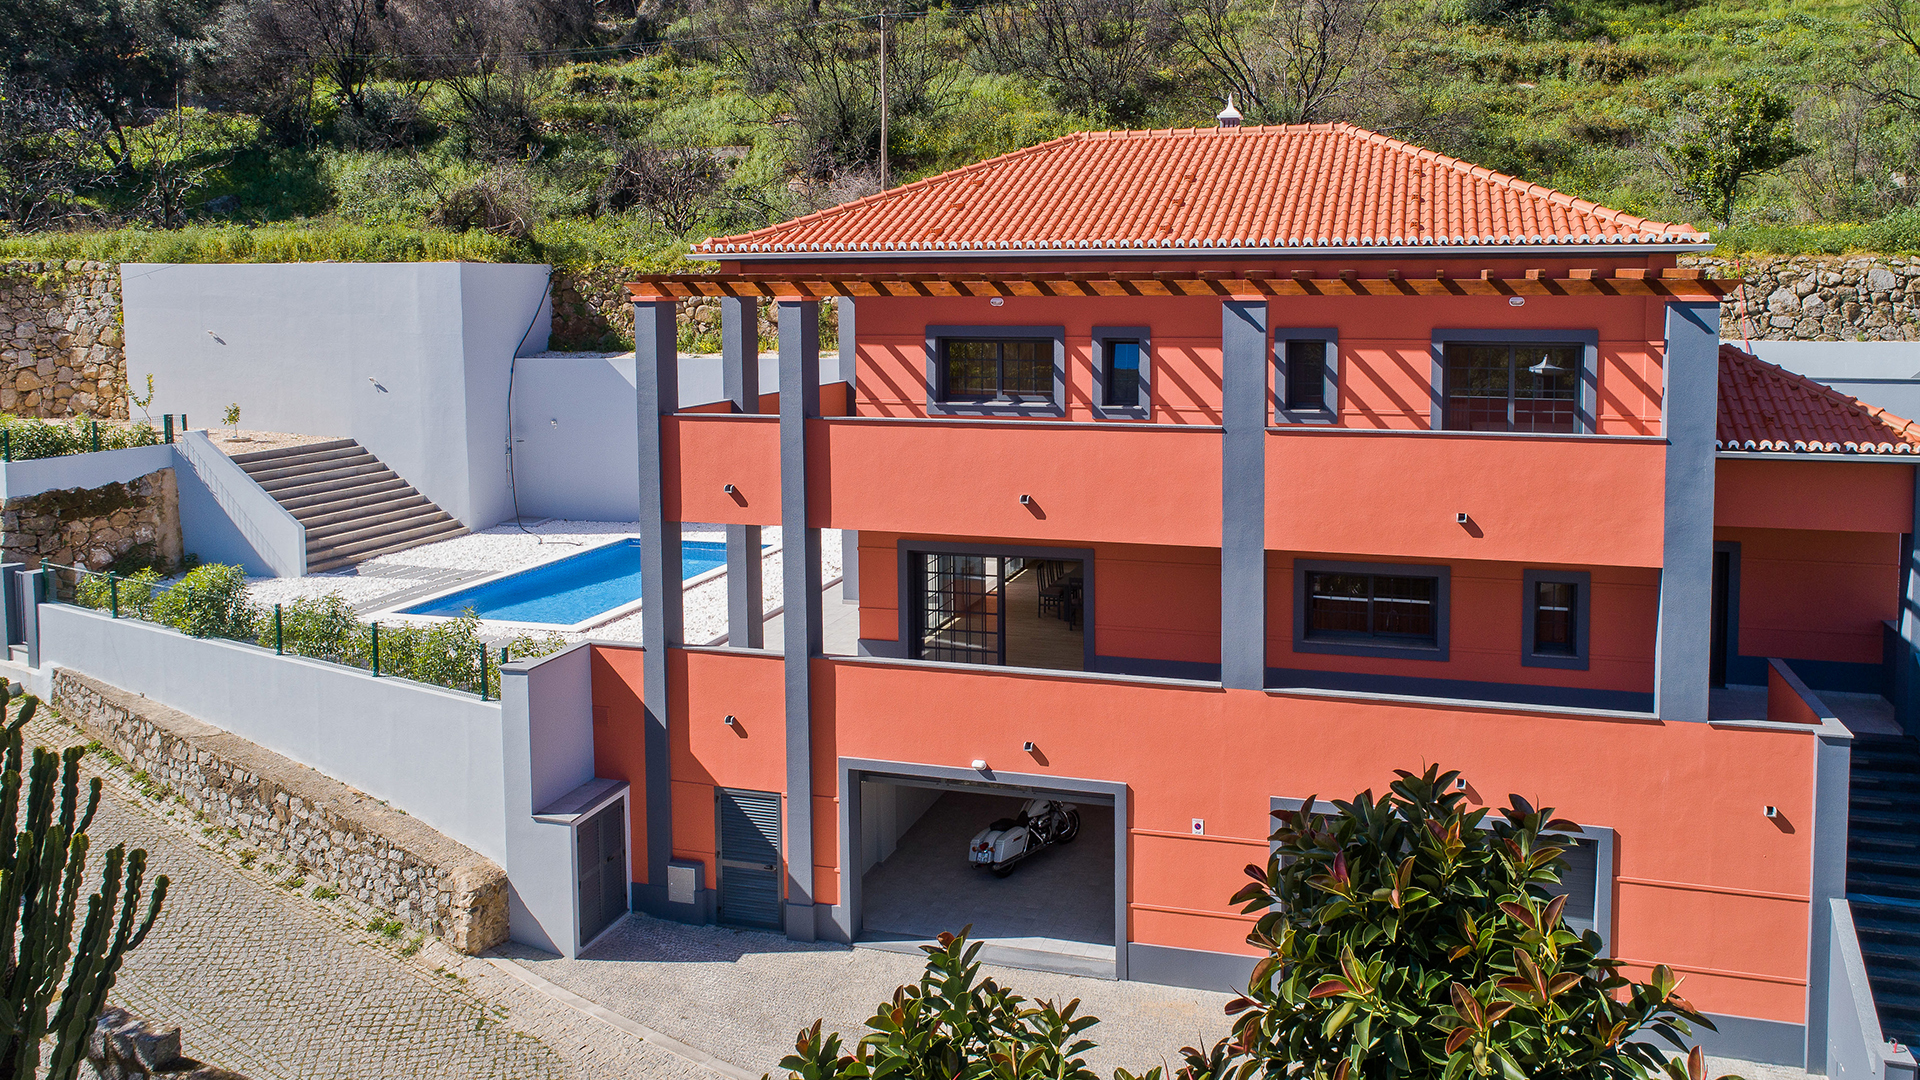 Neue moderne 3 SZ Villa in Caldas de Monchique, West Algarve | LG1619 Dies ist eine schlüsselfertige, hochwertige und brandneue Villa mit 3 Schlafzimmern und Pool am Rande des berühmten Wellness- Ortes Caldas de Monchique mit Blick ins Grüne und Annehmlichkeiten vor der Tür.